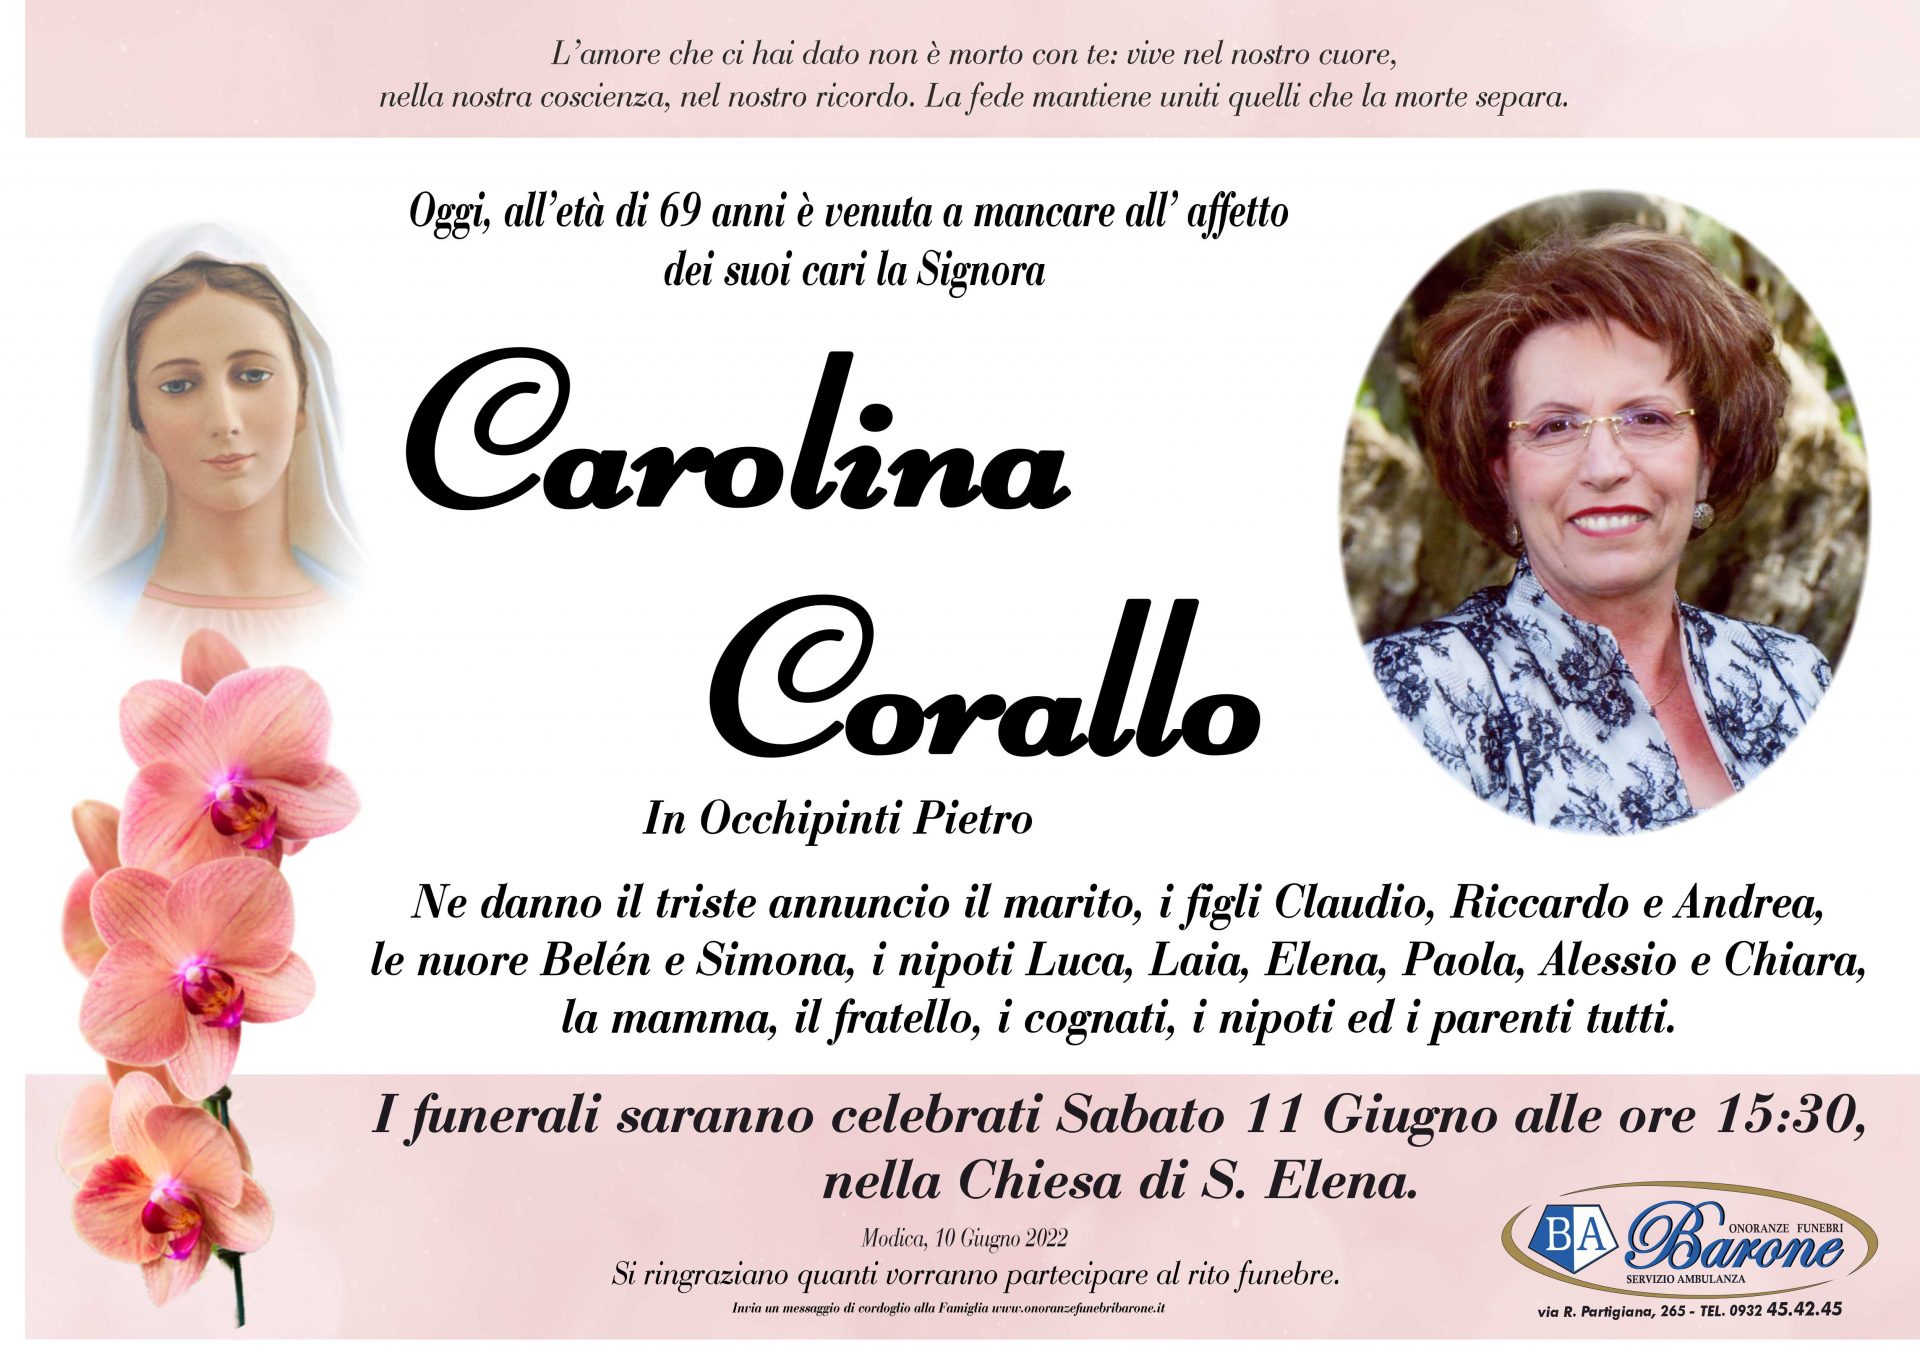 Carolina Corallo